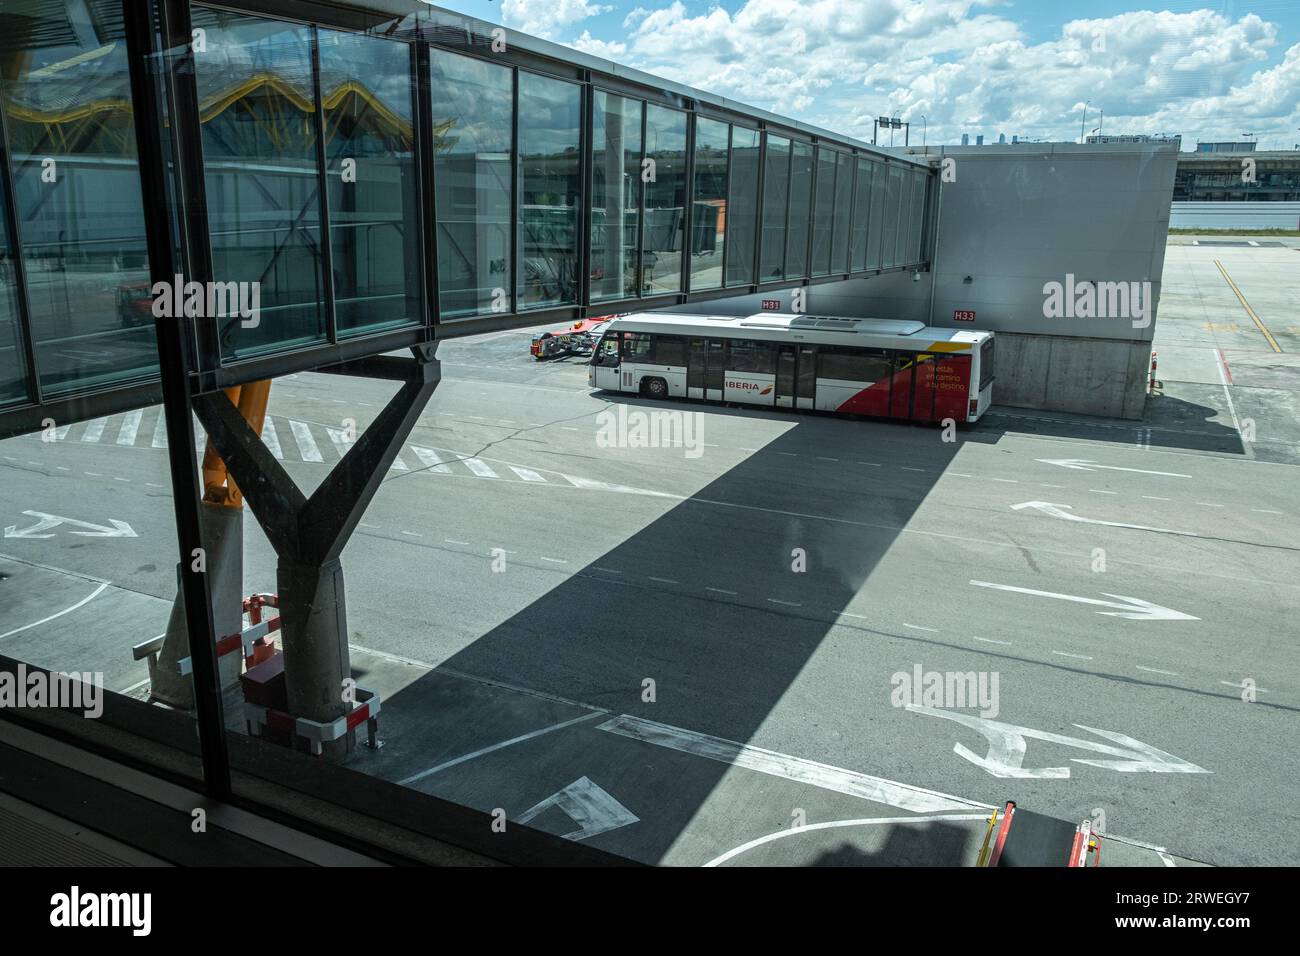 Madrid, Spagna 05 26 2018: Vista esterna del terminal T4 dell'aeroporto di Madrid. Adolfo Suarez-Barajas Foto Stock